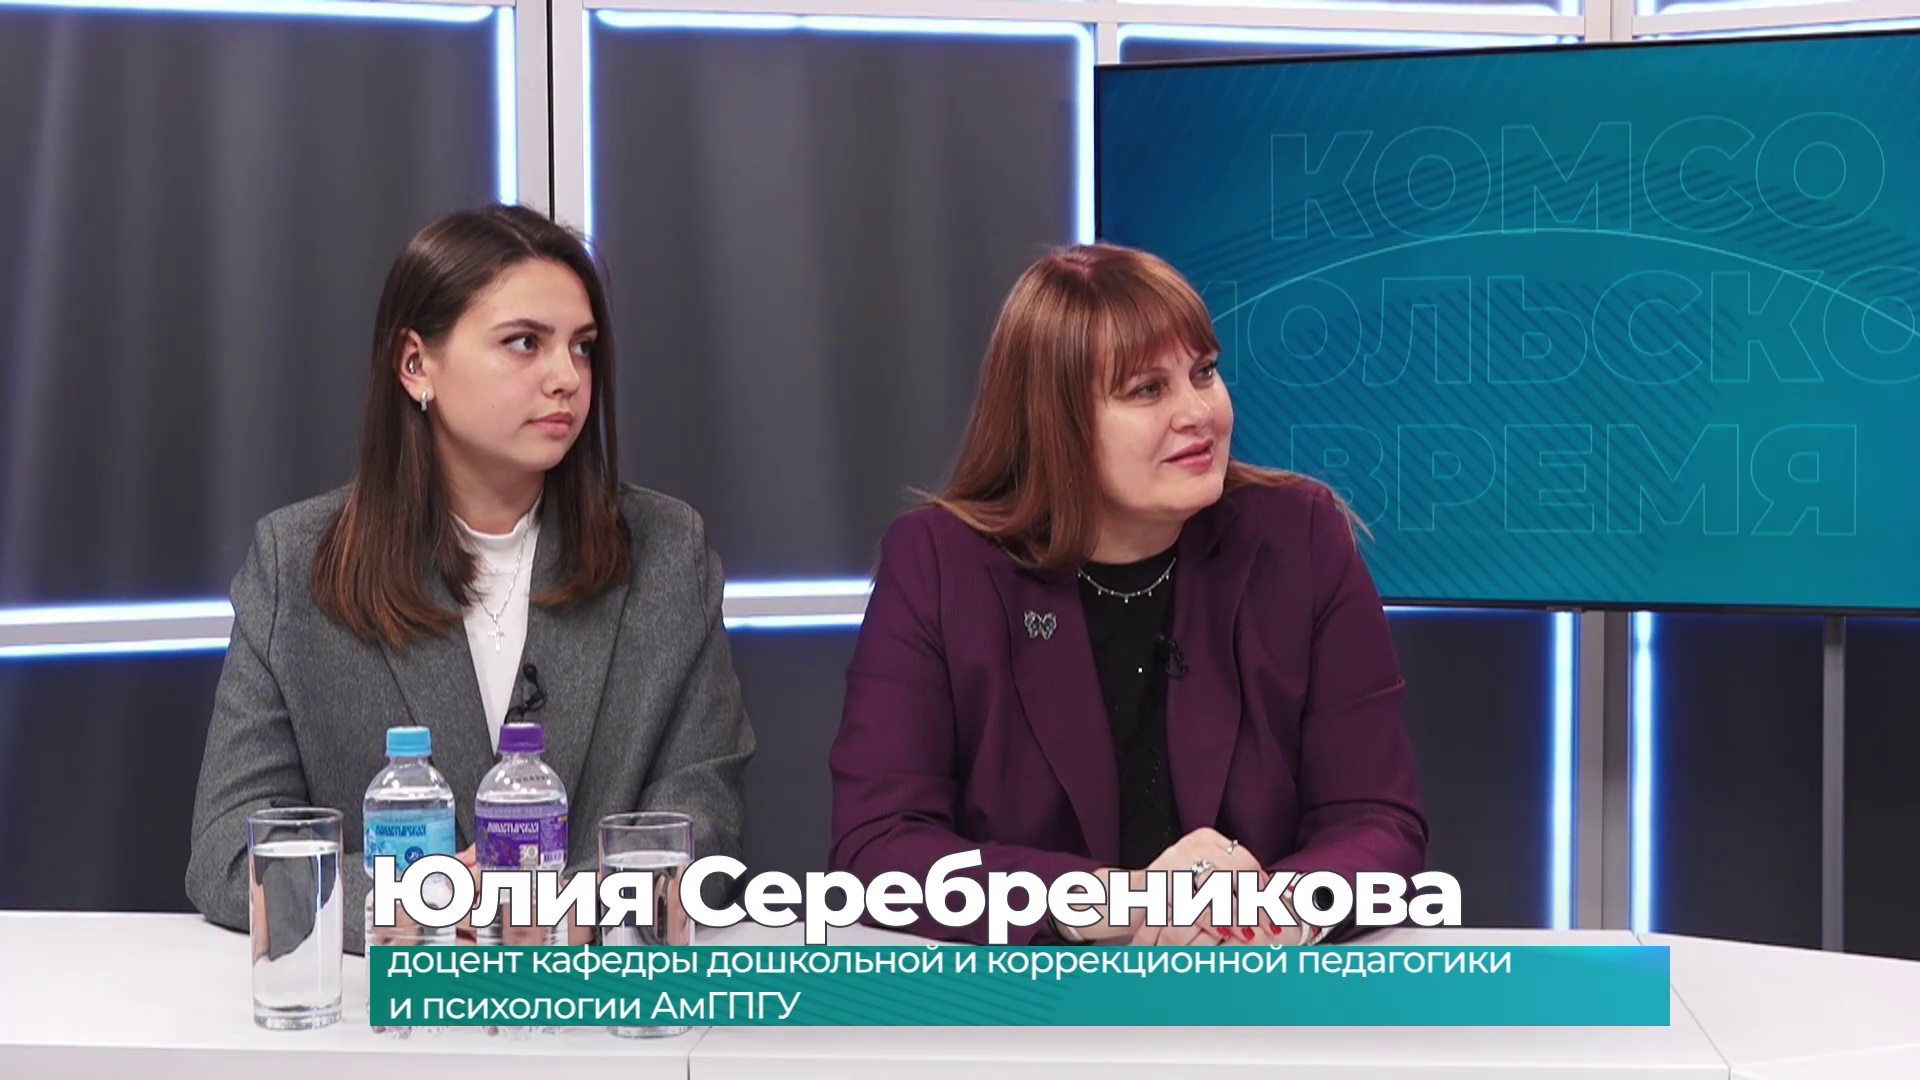 Гости студии Юлия Серебреникова и Наталья Евлоева о приёмной кампании в АмГПГУ